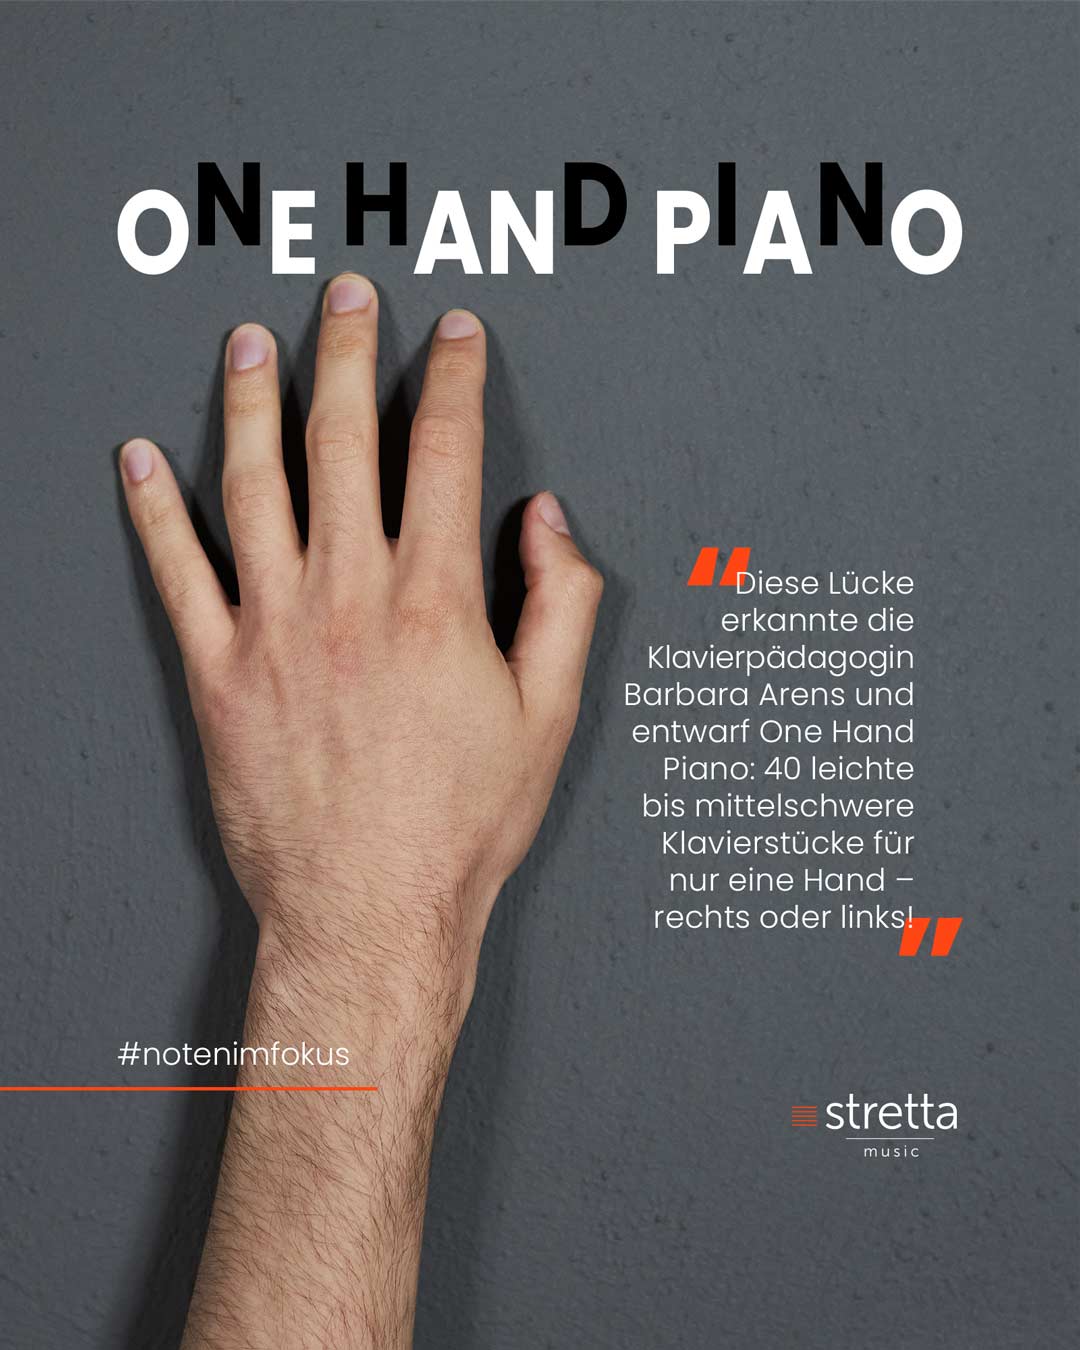 One Hand Piano – Leichte Klavierstücke für links oder rechts